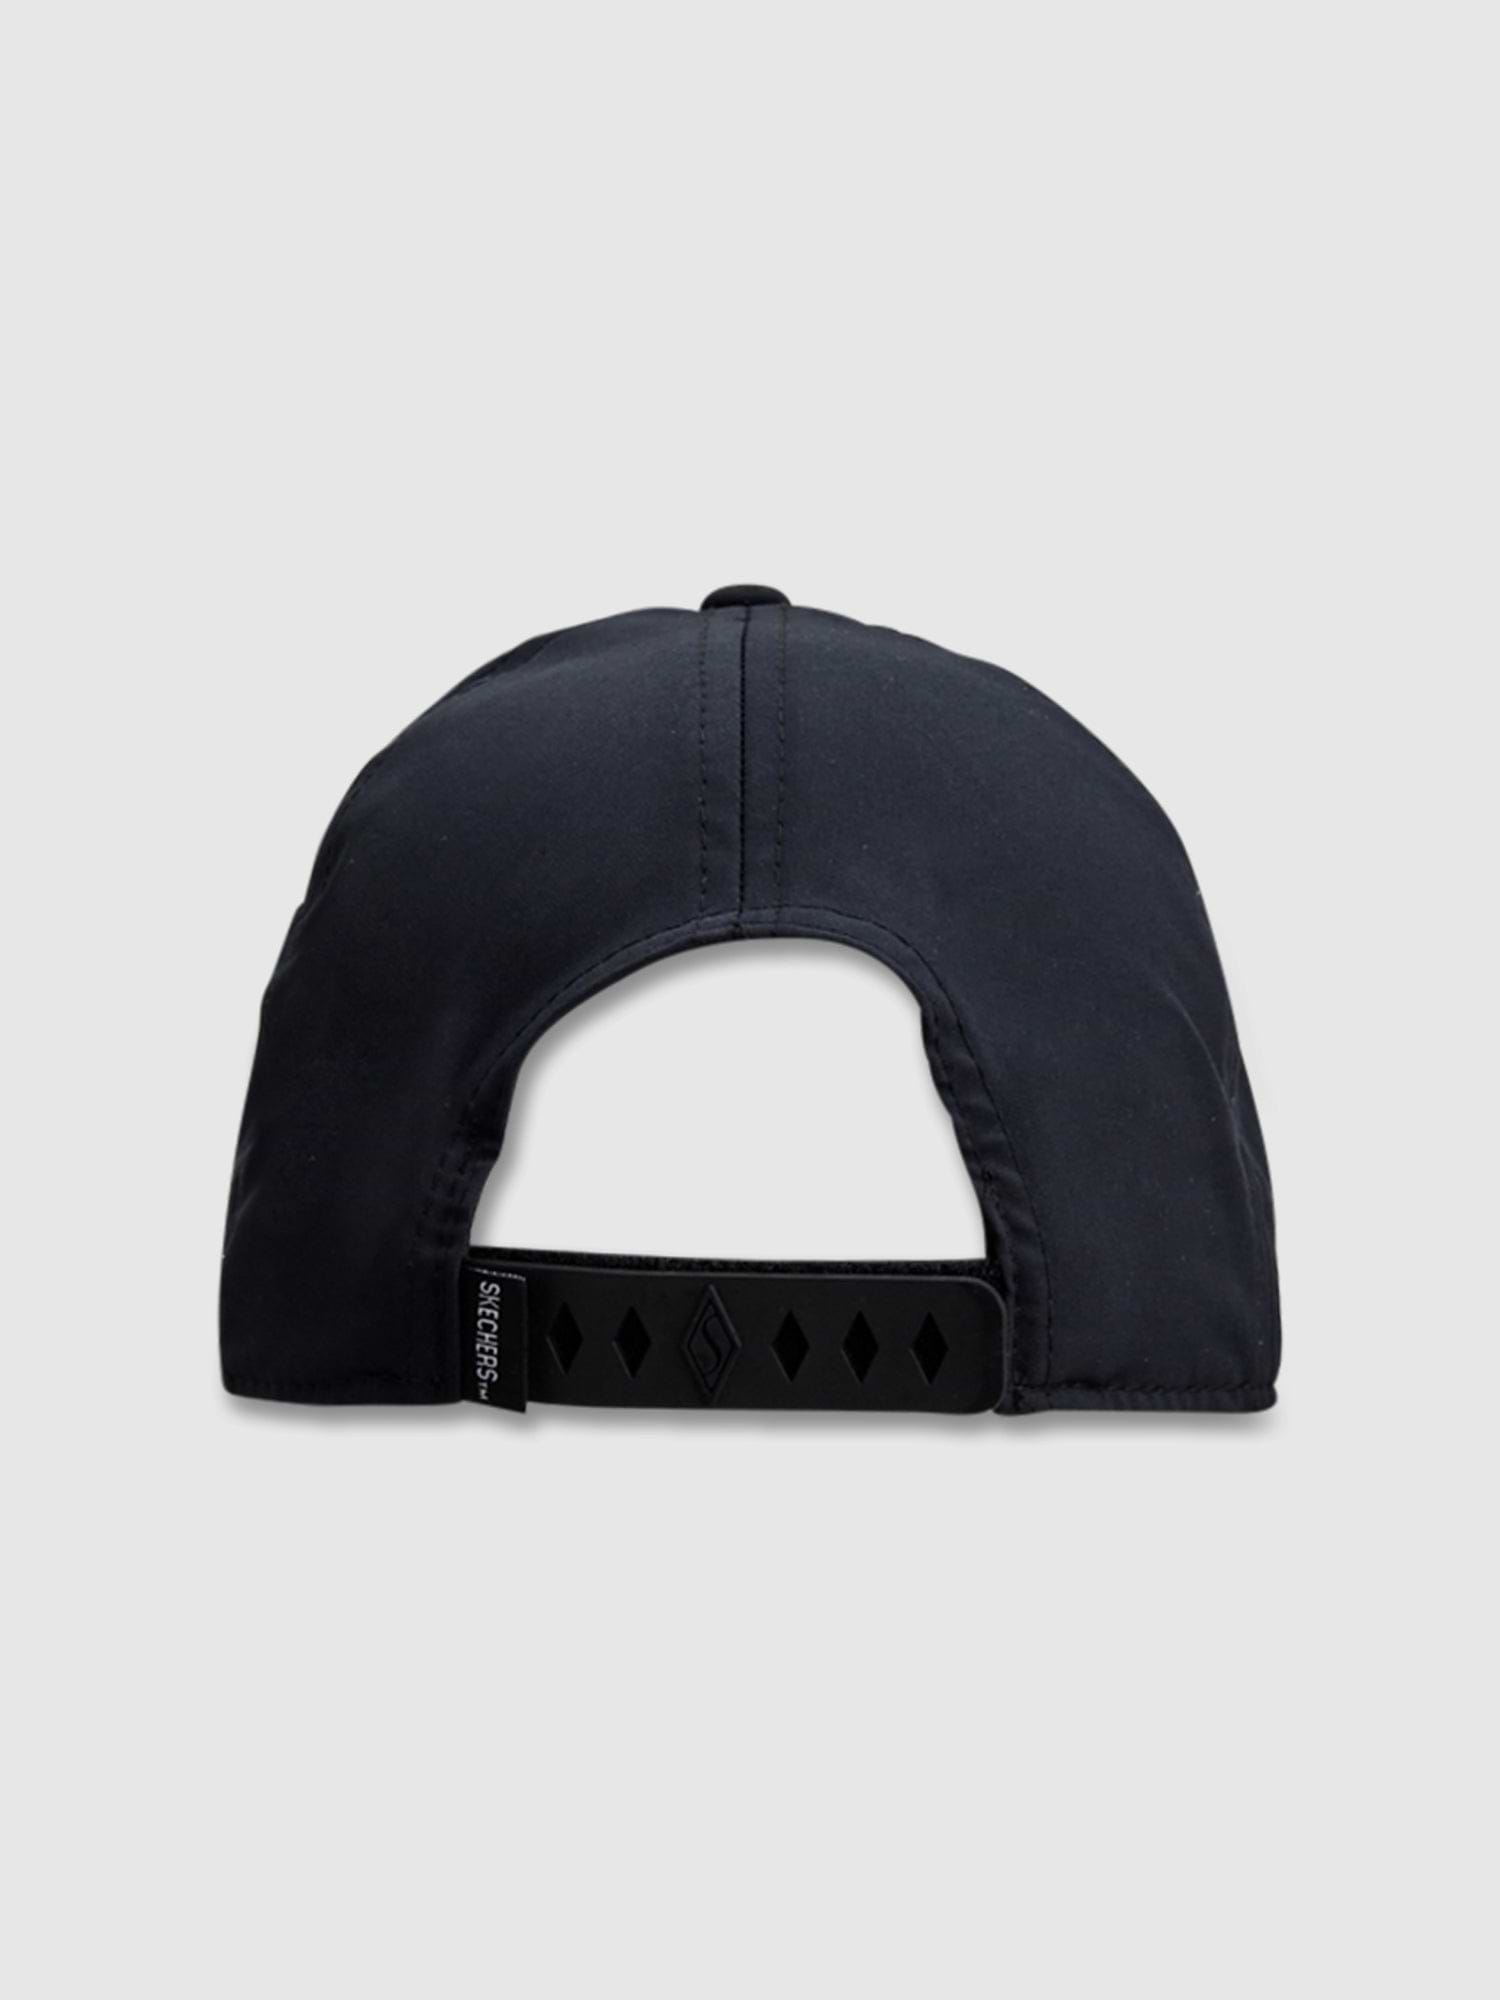 כובע מצחייה עם לוגו פרחוני / יוניסקס